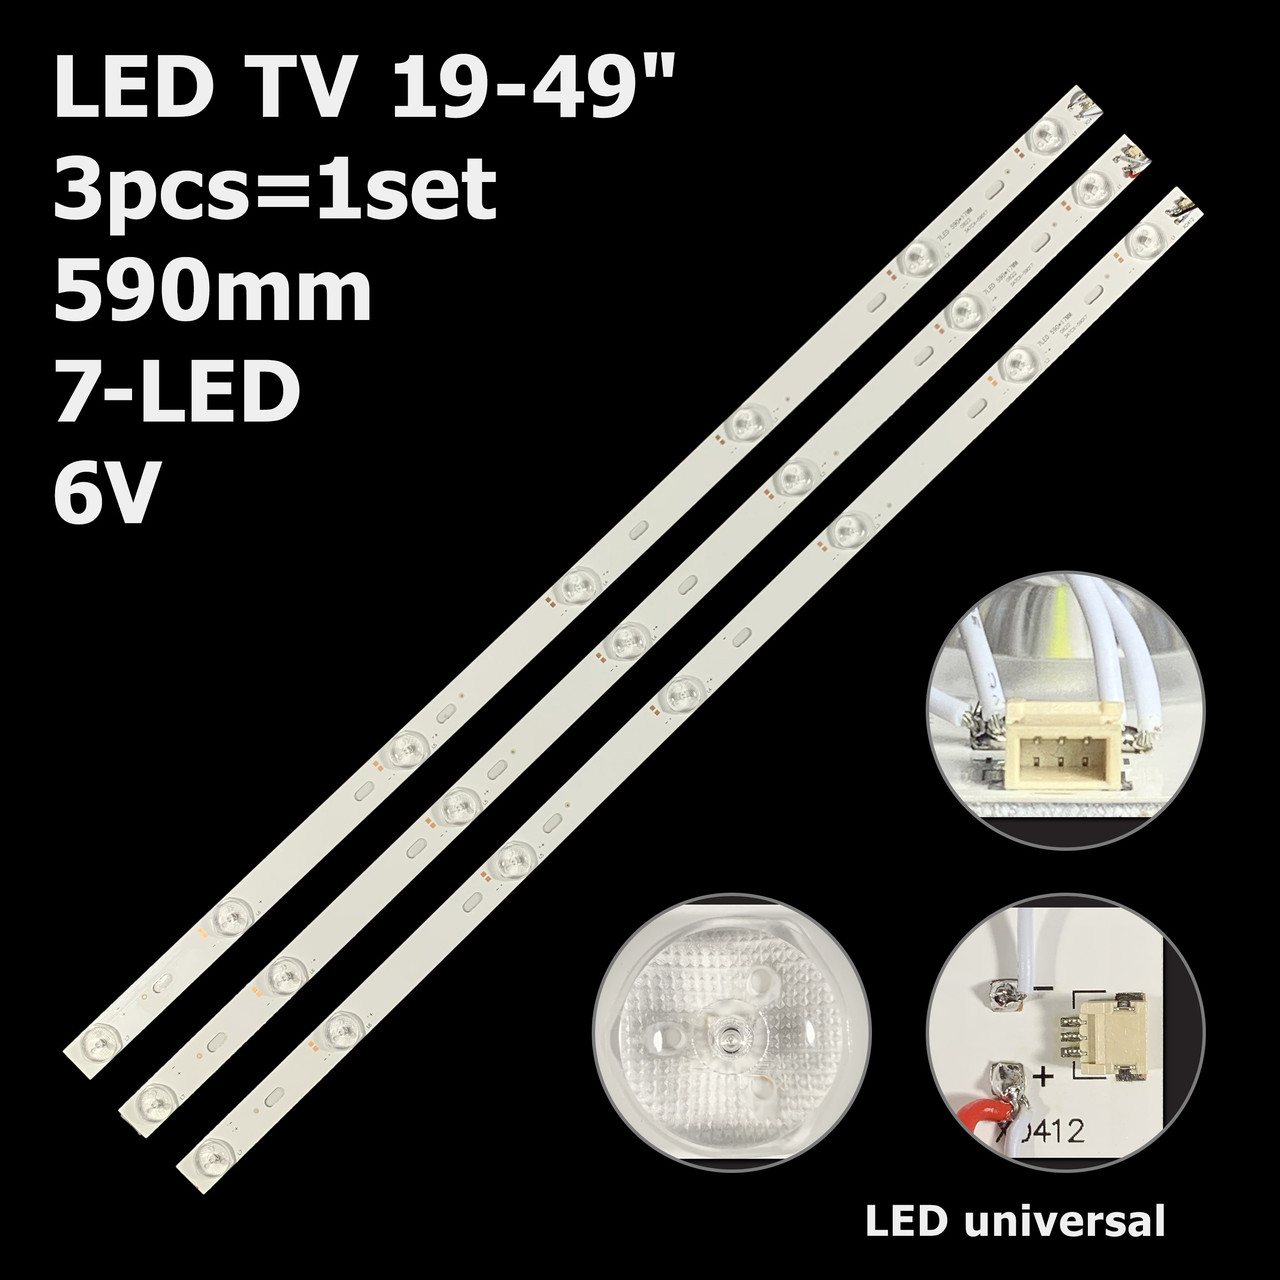 LED підсвітка TV універсальна 7-led 6V 590mm 3шт.